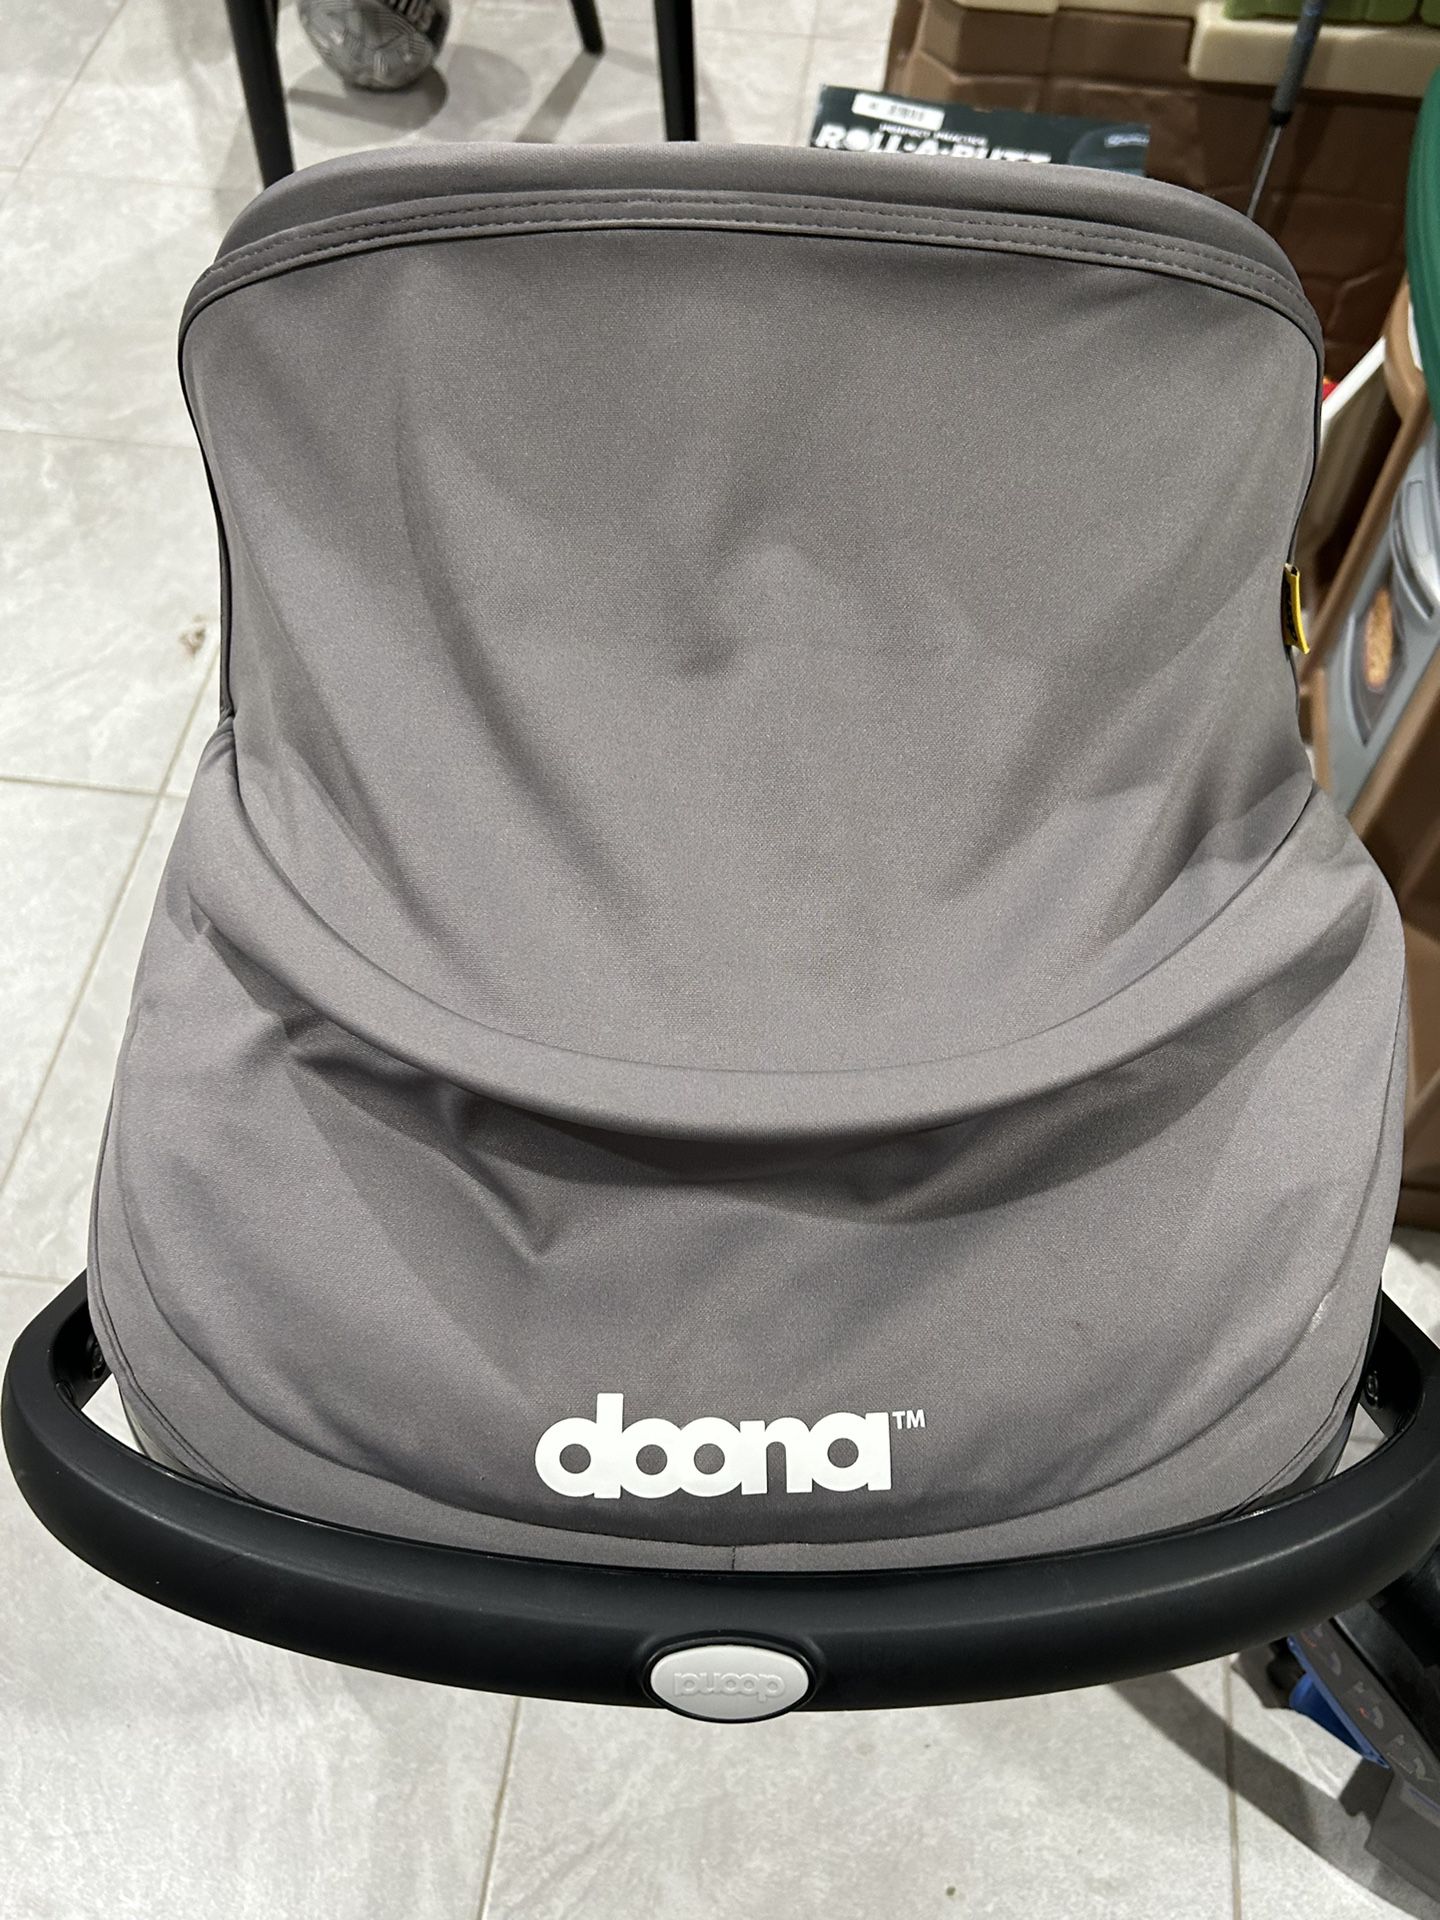 Doona Car Seat Stroller 